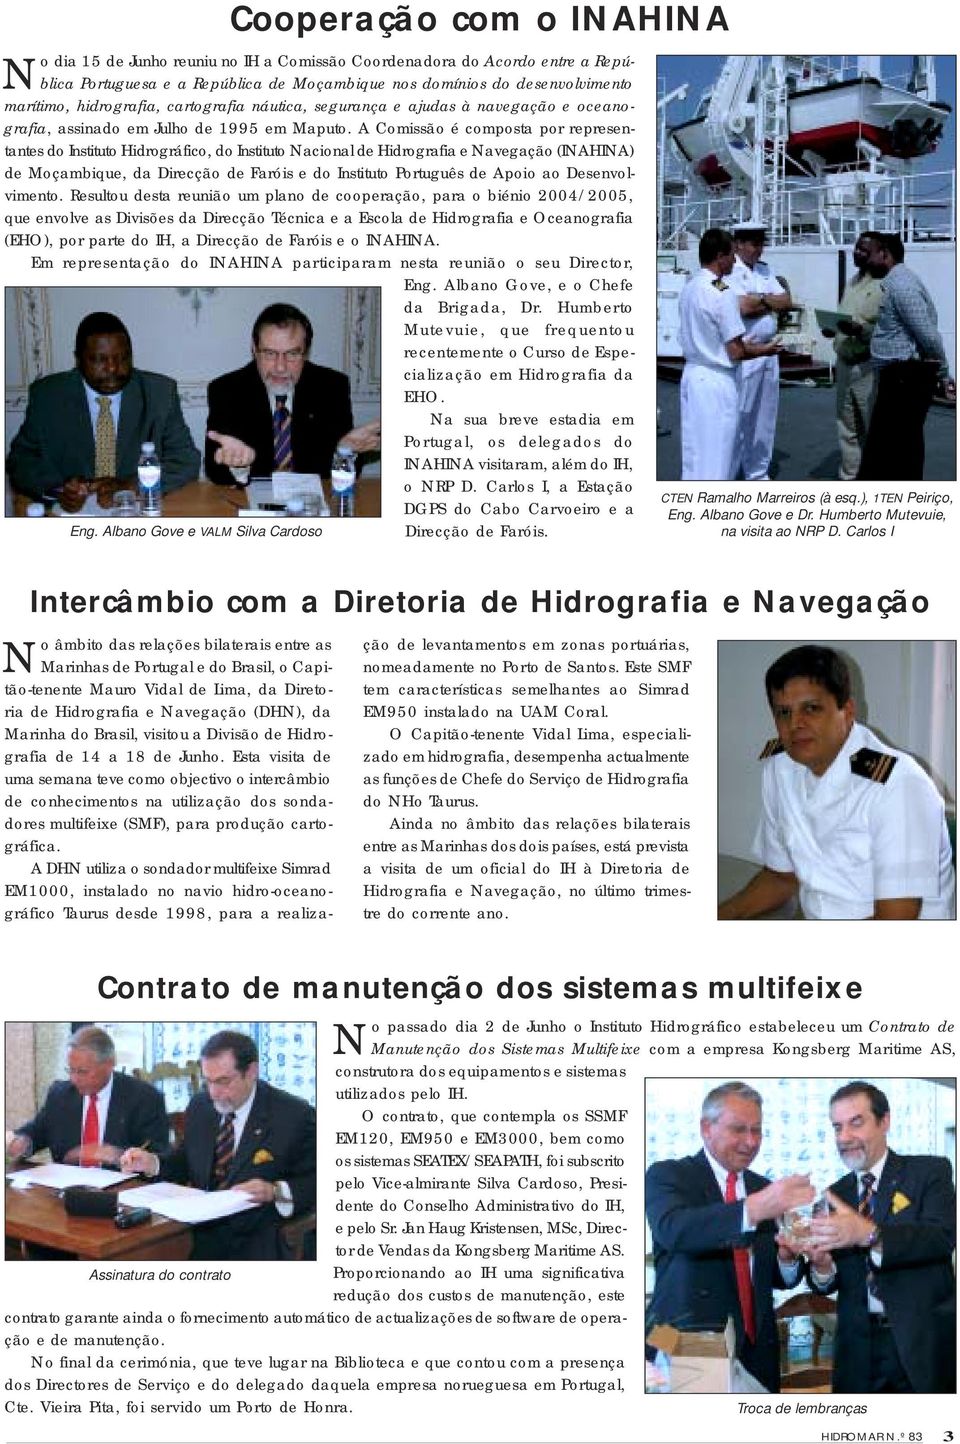 A Comissão é composta por representantes do Instituto Hidrográfico, do Instituto Nacional de Hidrografia e Navegação (INAHINA) de Moçambique, da Direcção de Faróis e do Instituto Português de Apoio